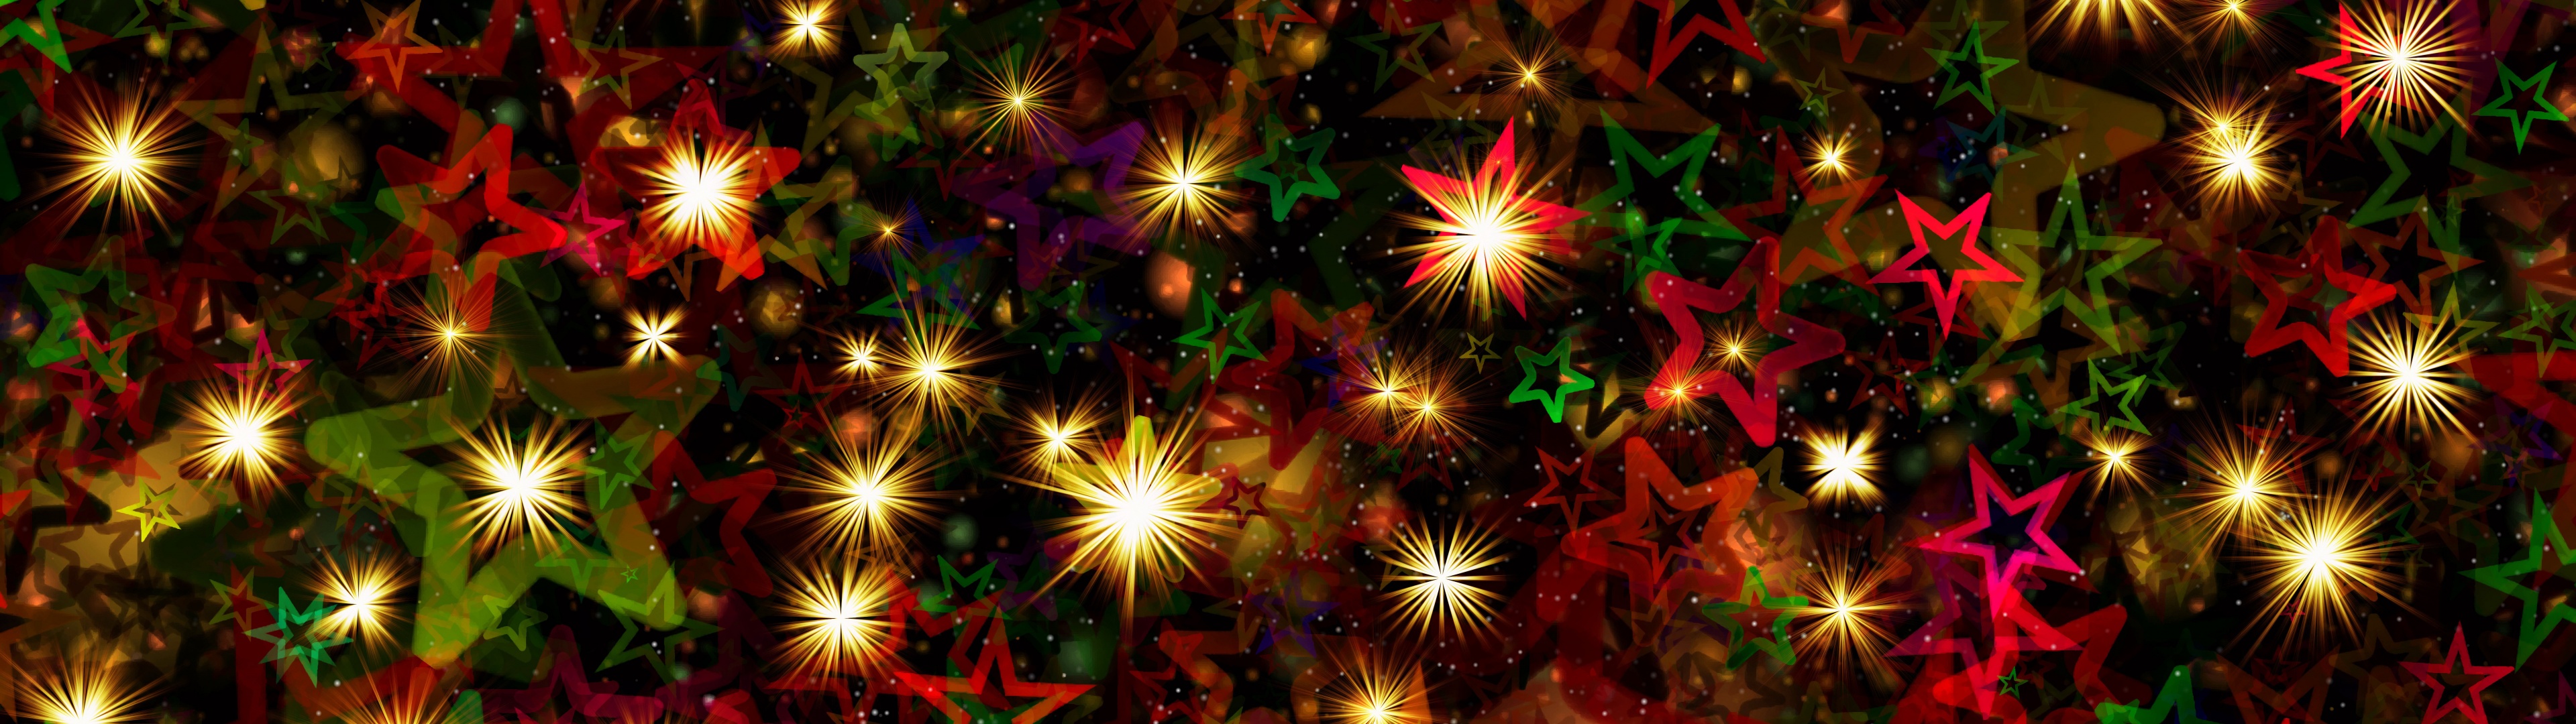 Không gian tràn ngập ánh đèn và màu sắc rực rỡ của Giáng sinh luôn khiến chúng ta phải háo hức chờ đón sự kiện này từ năm này đến năm khác. Hãy khám phá những bức ảnh lung linh về Giáng sinh và trang trí nhà cửa để làm tăng thêm niềm vui và sợi dây kết nối tình cảm giữa gia đình và bạn bè.